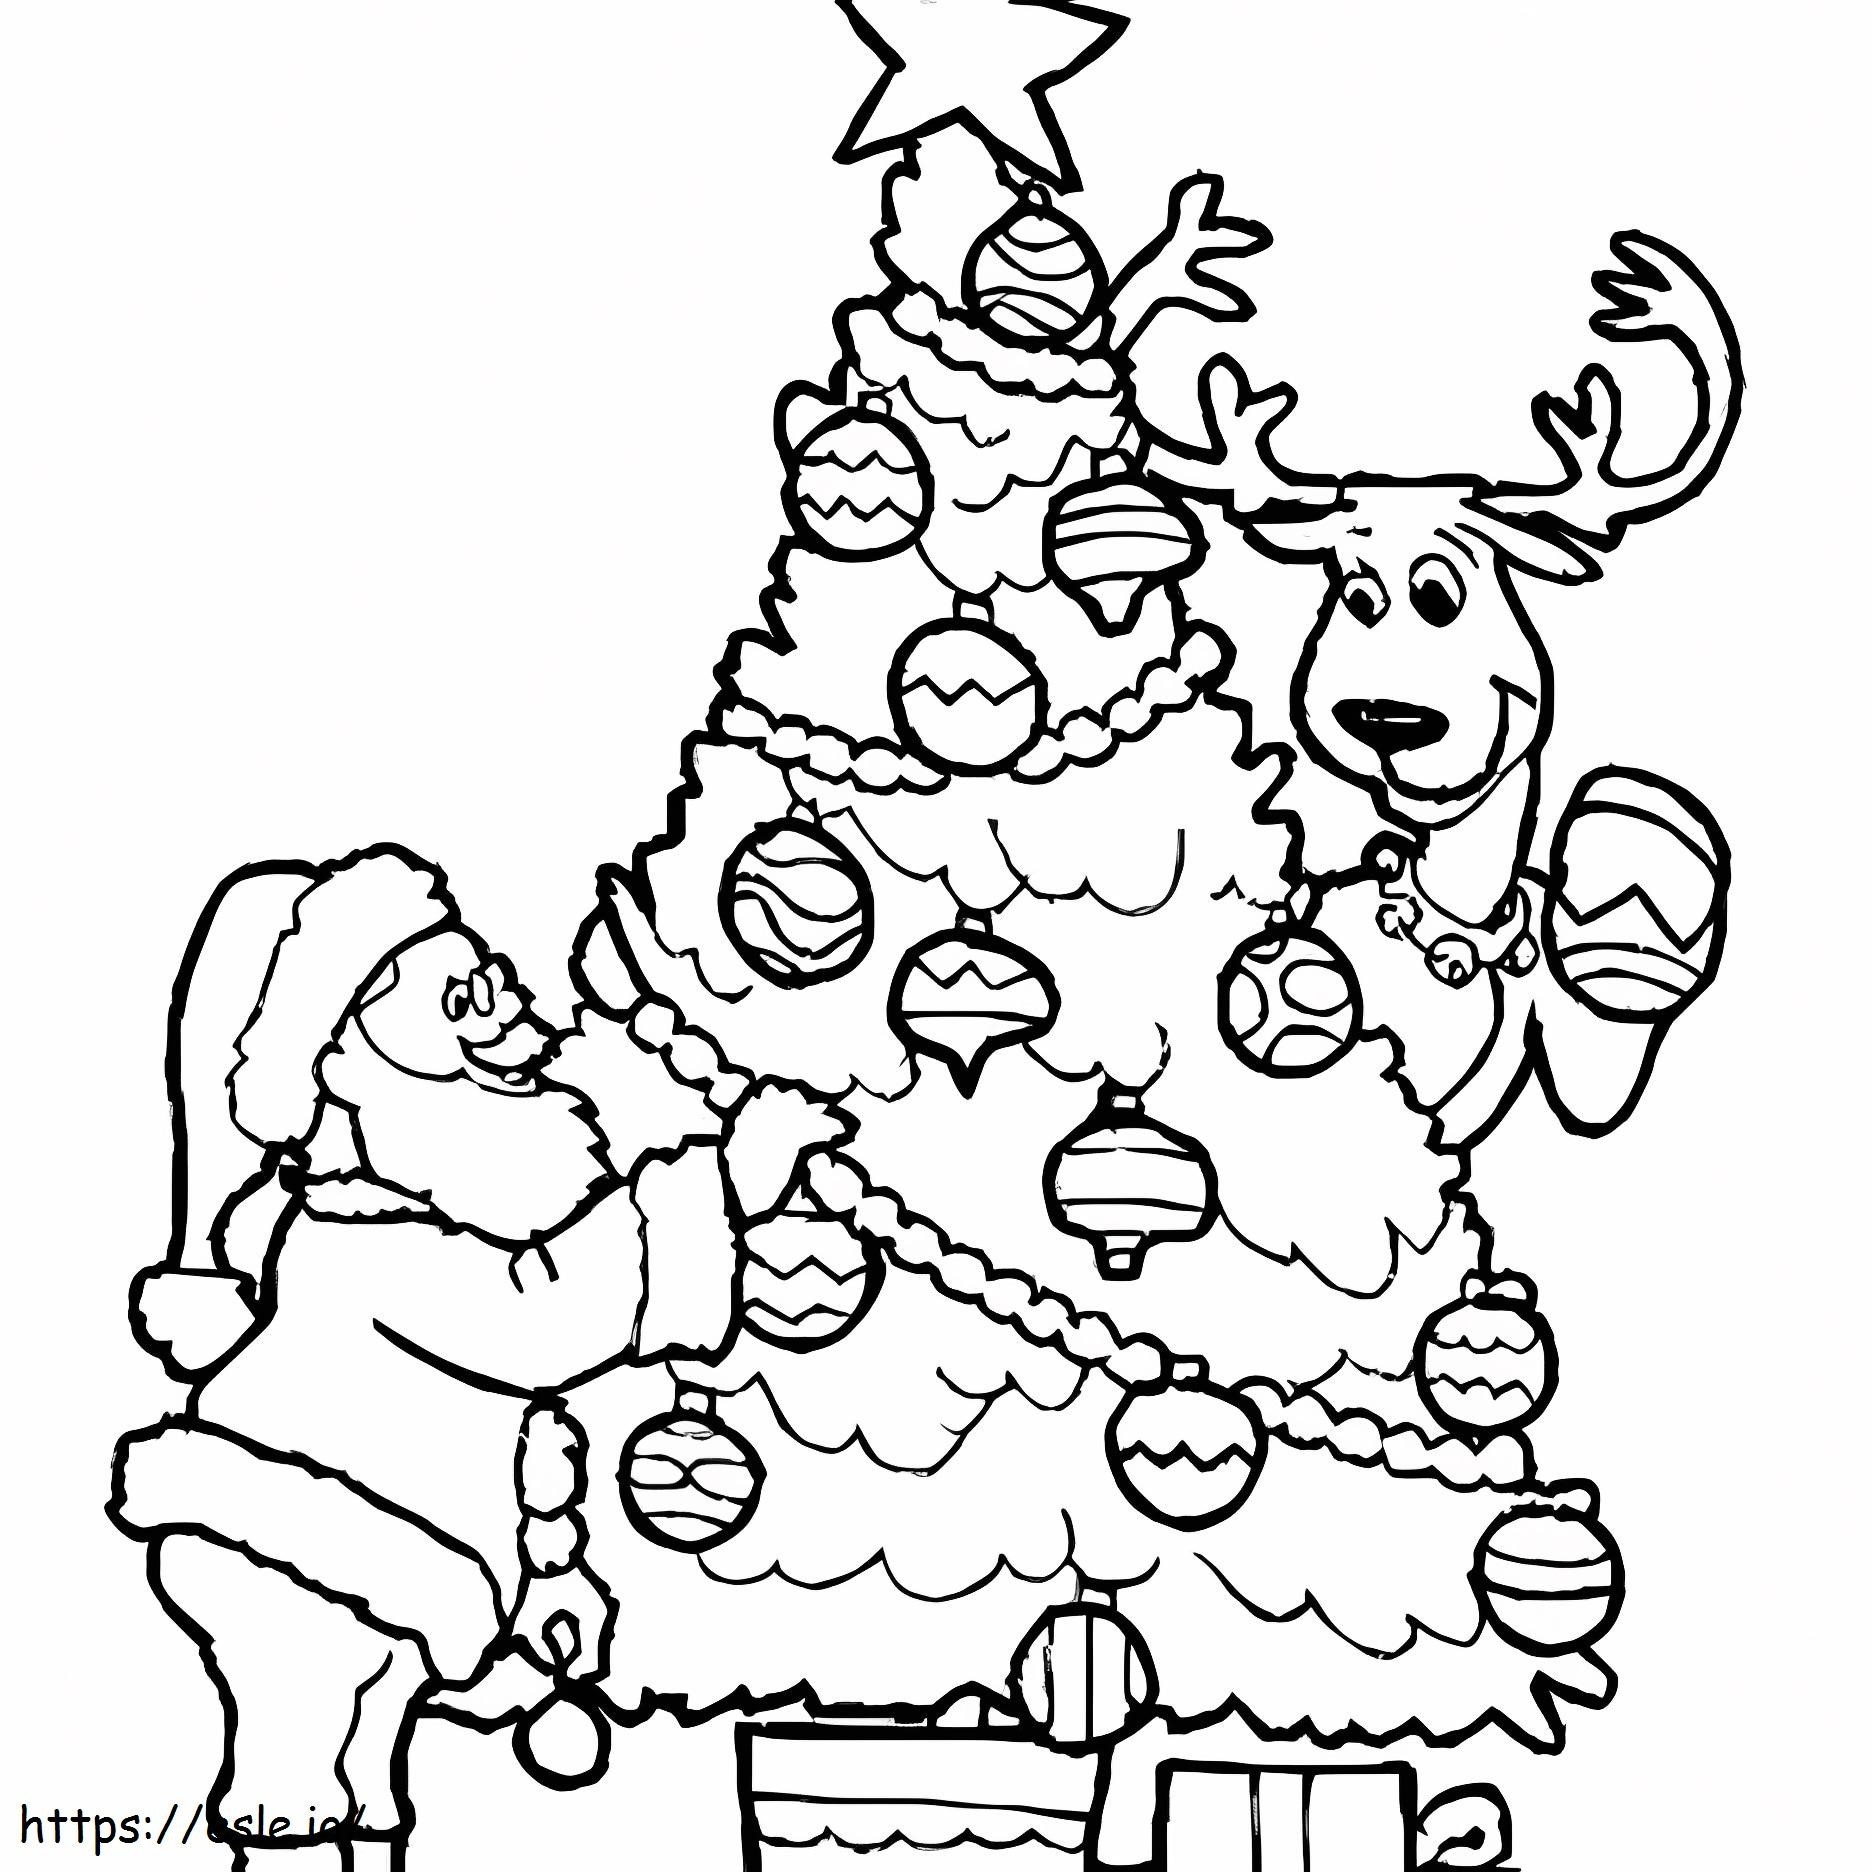 Ren geyiği ve Noel Baba ile Noel ağacı boyama